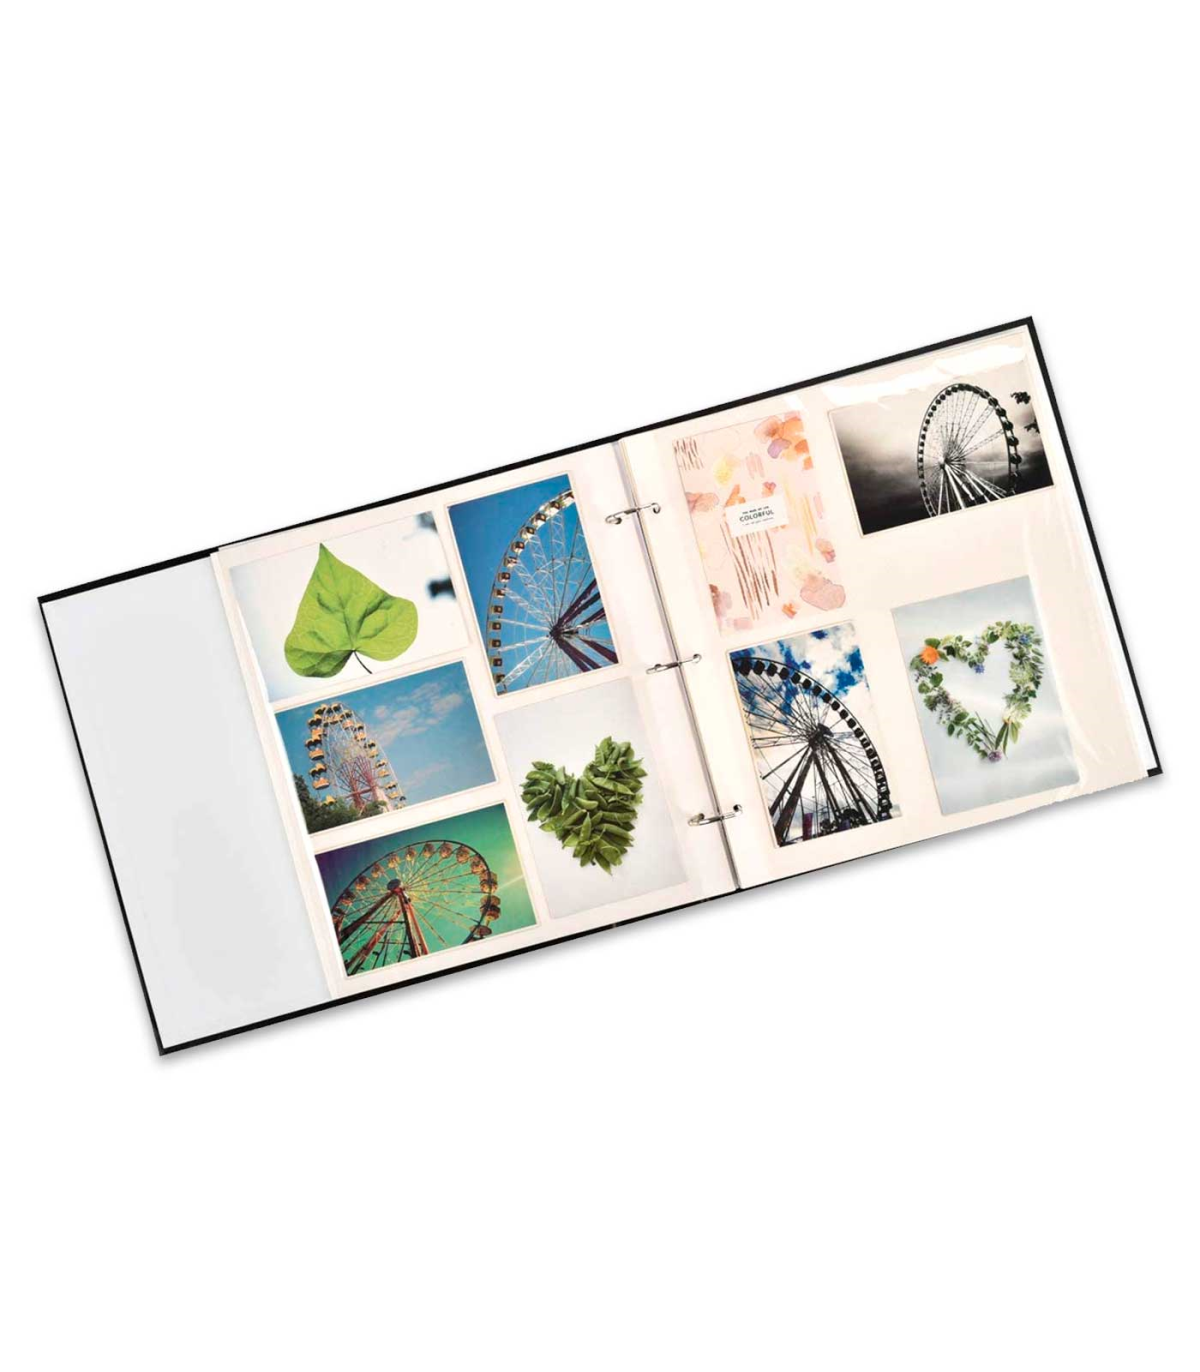 Tradineur - Álbum de foto - Capacidad 200 fotos de 15 x 20 cm - Fabricación  en cartón forrado - Ideal para guardar todas tus fot